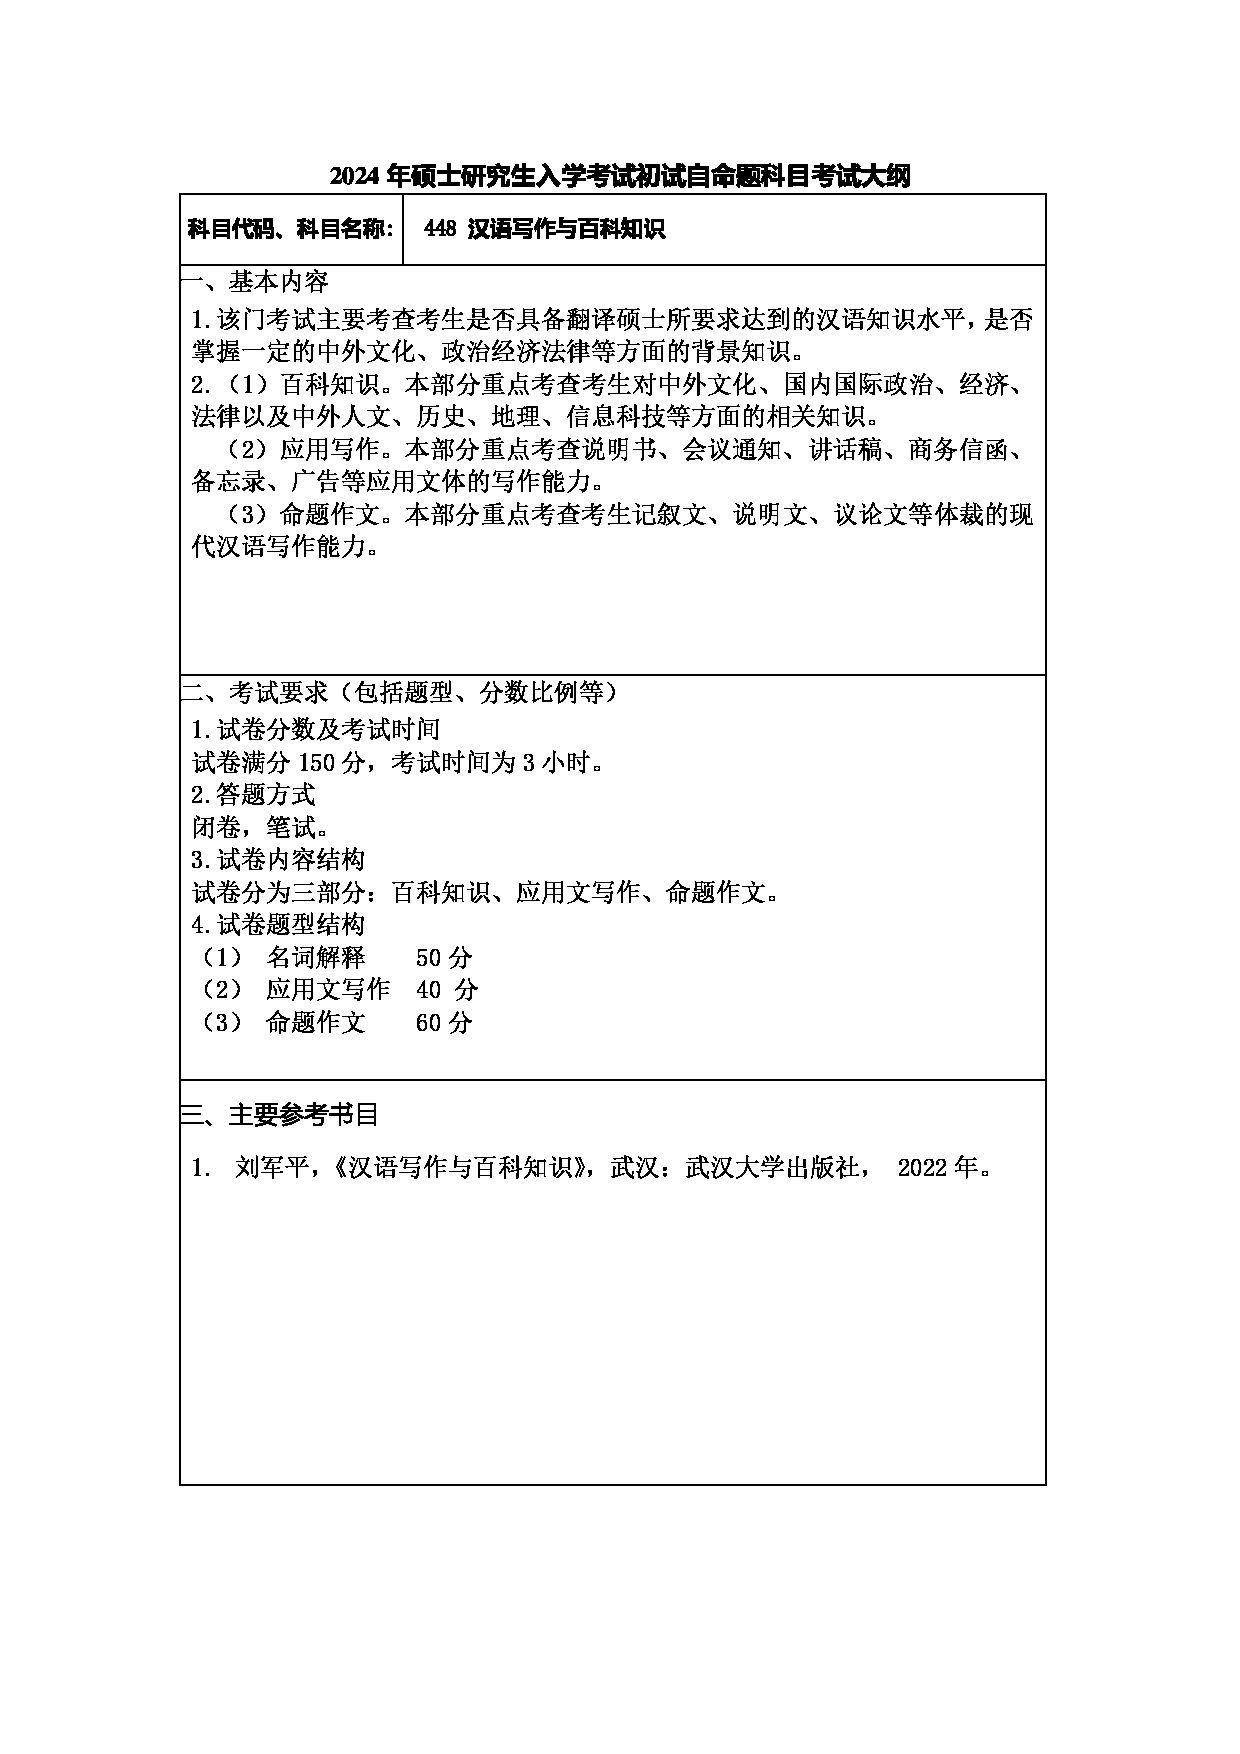 2024考研大纲：常州大学2024年考研自命题科目 448 汉语写作与百科知识 考试大纲第1页